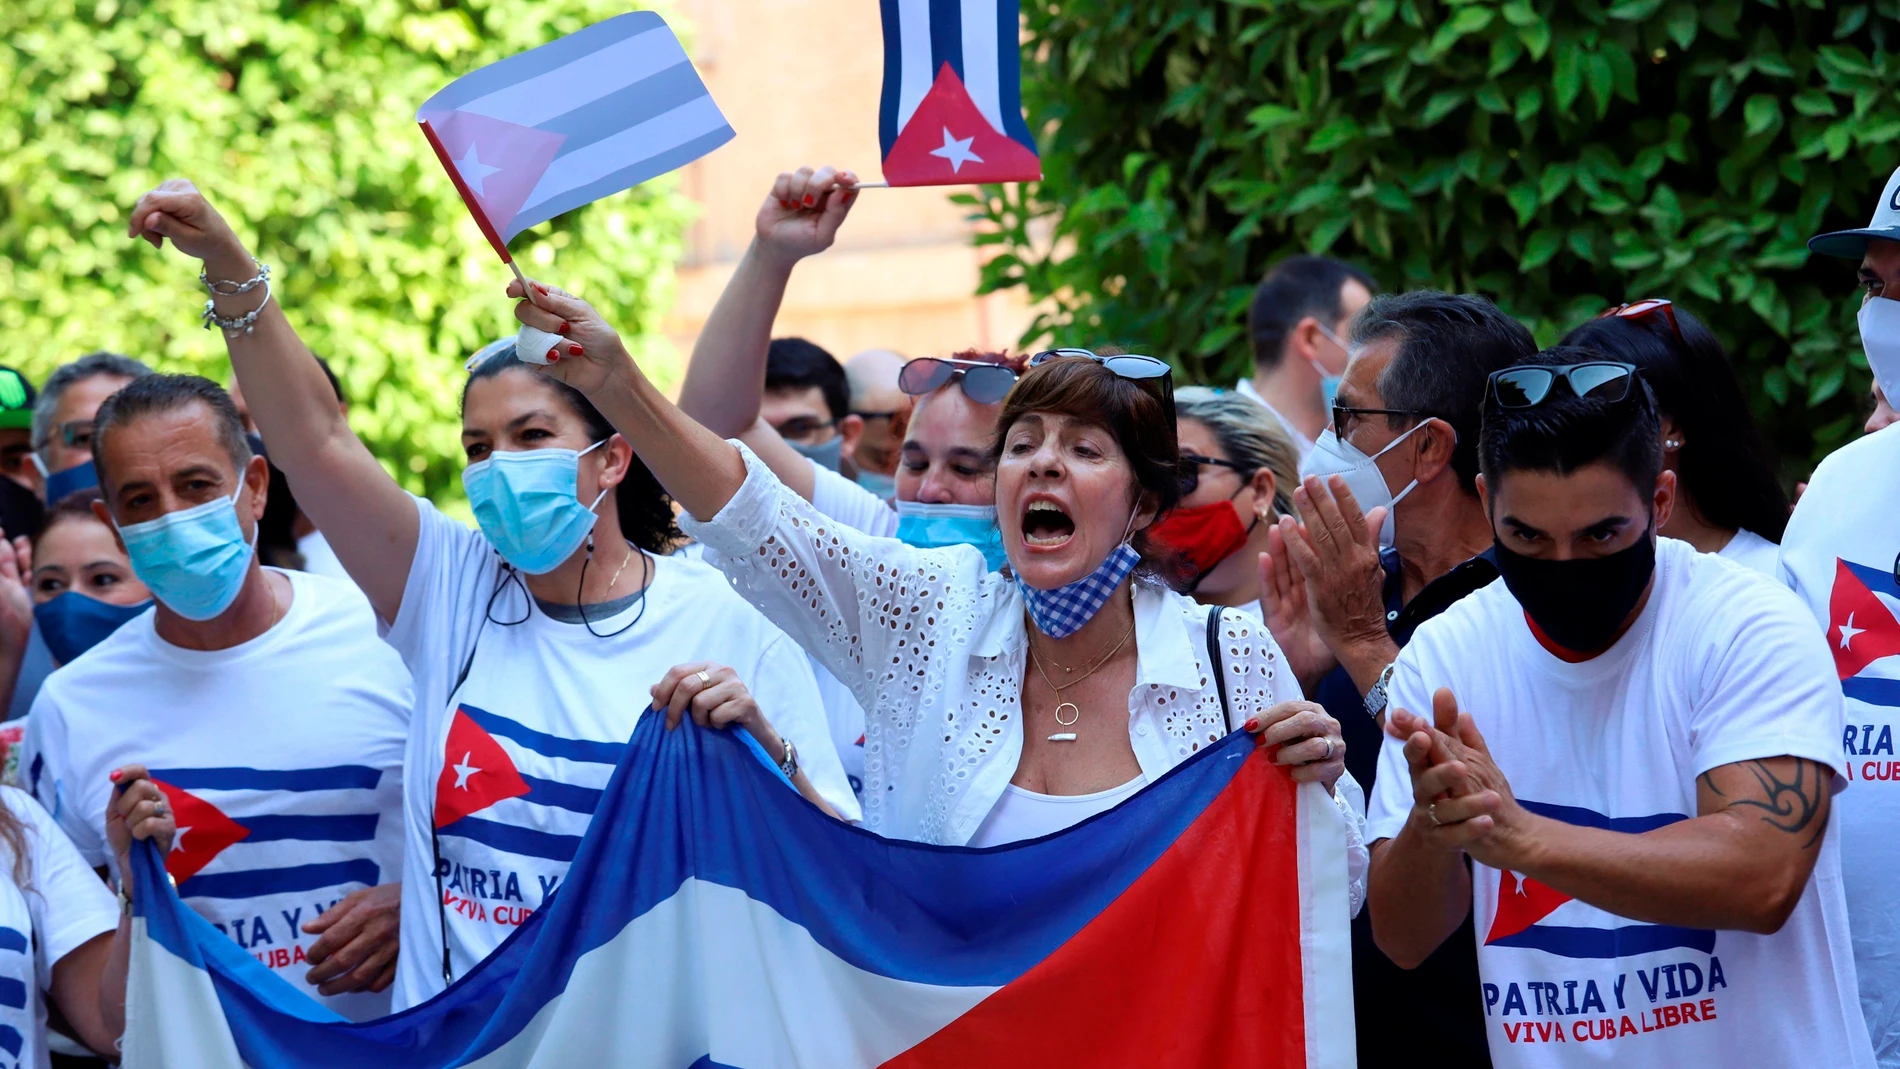 La Sociedad Civil de Cubanos en Valencia protesta frente al Ayuntamiento bajo el lema Patria y Vida.